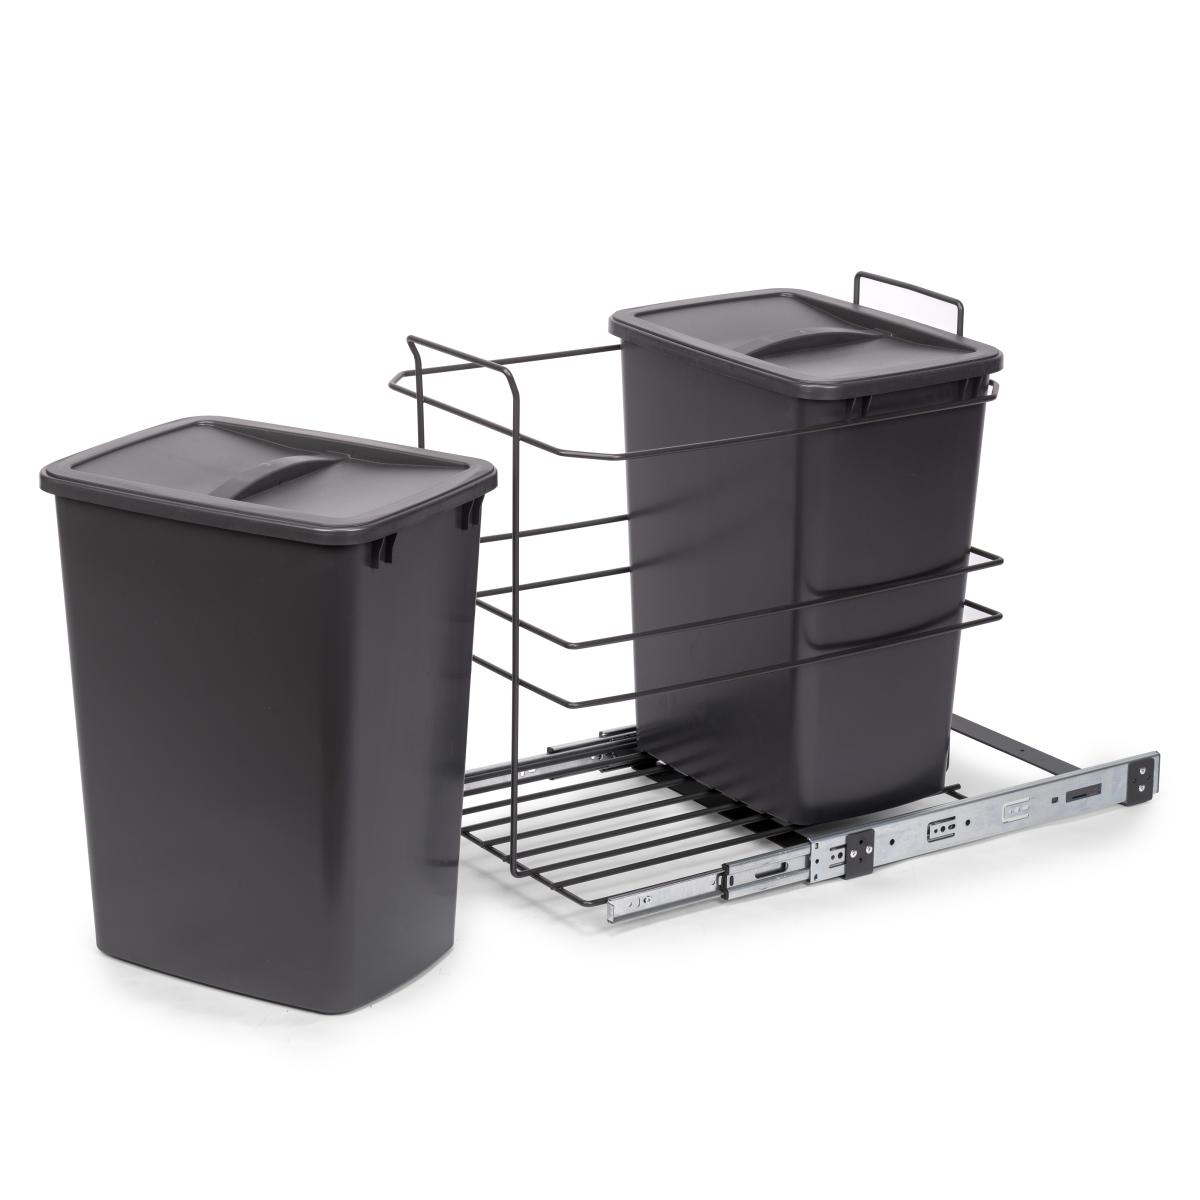 Contenedores de reciclaje Recycle para cocina, 2 x 35 L, fijación inferior y extracción manual